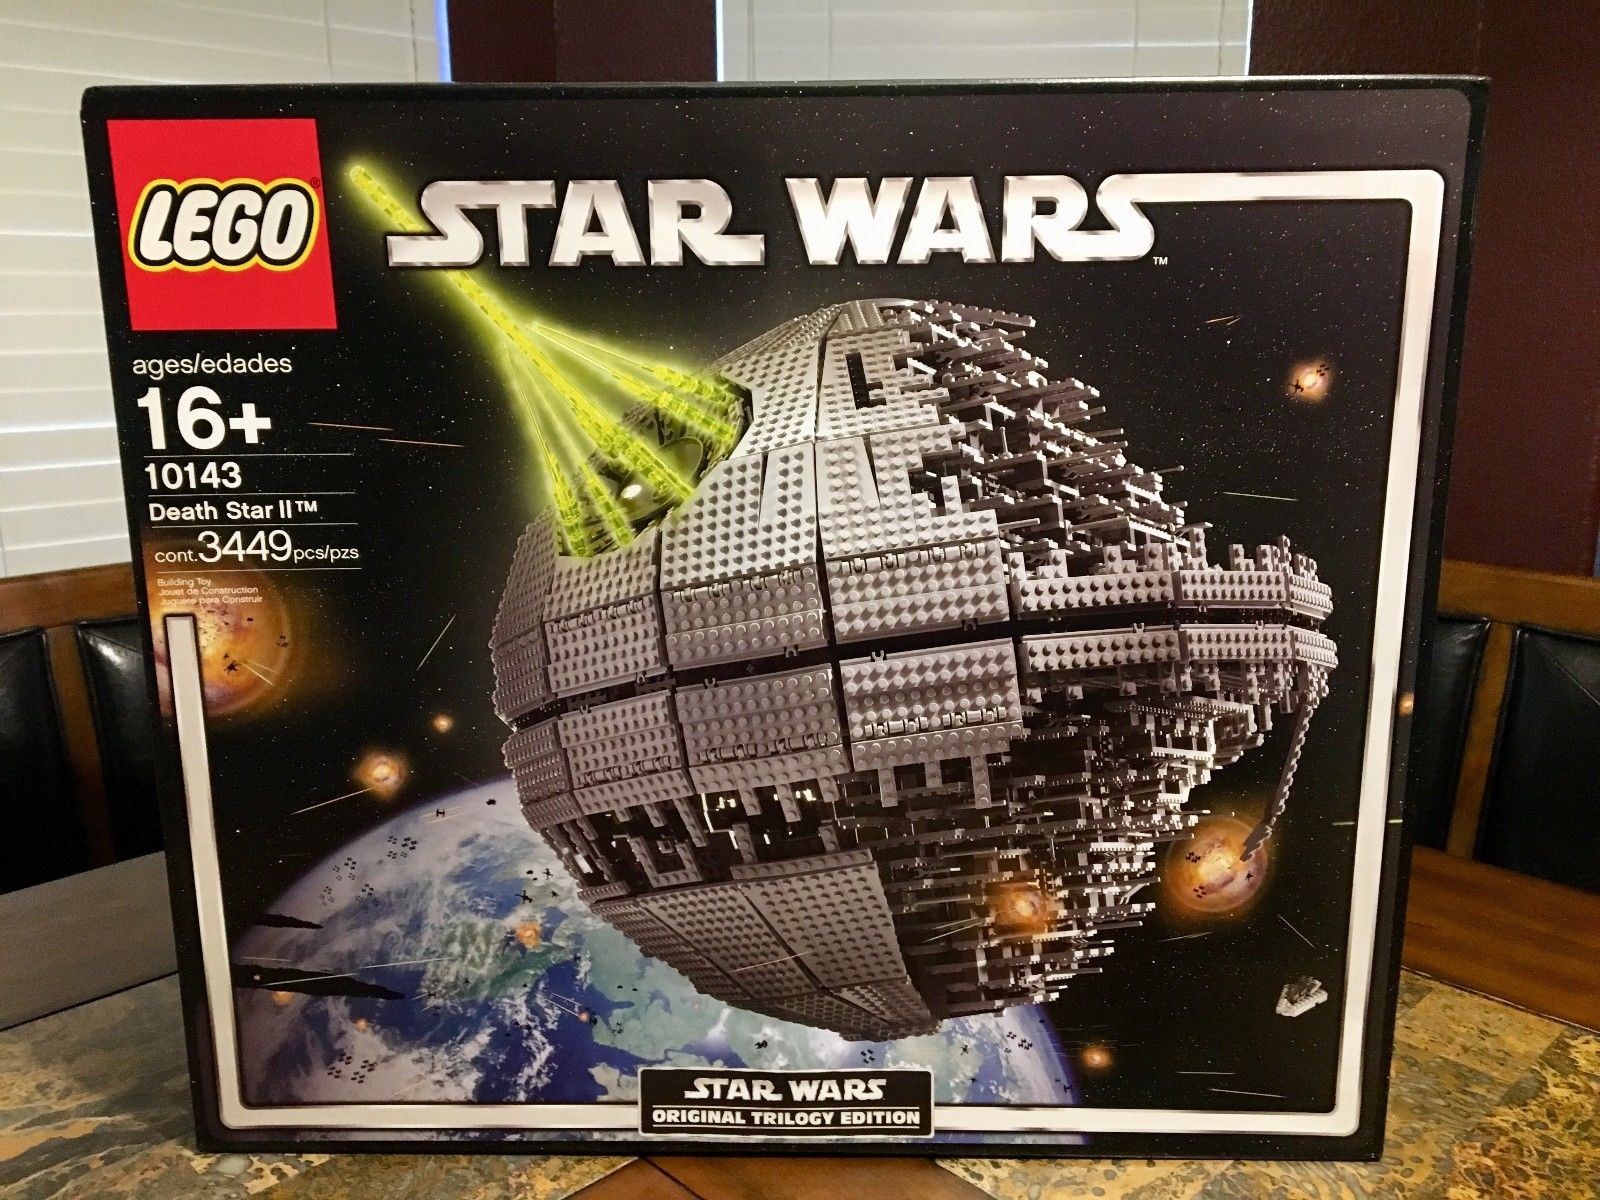 Lego Star Wars : 5 pièces à des prix extraordinaires ! 